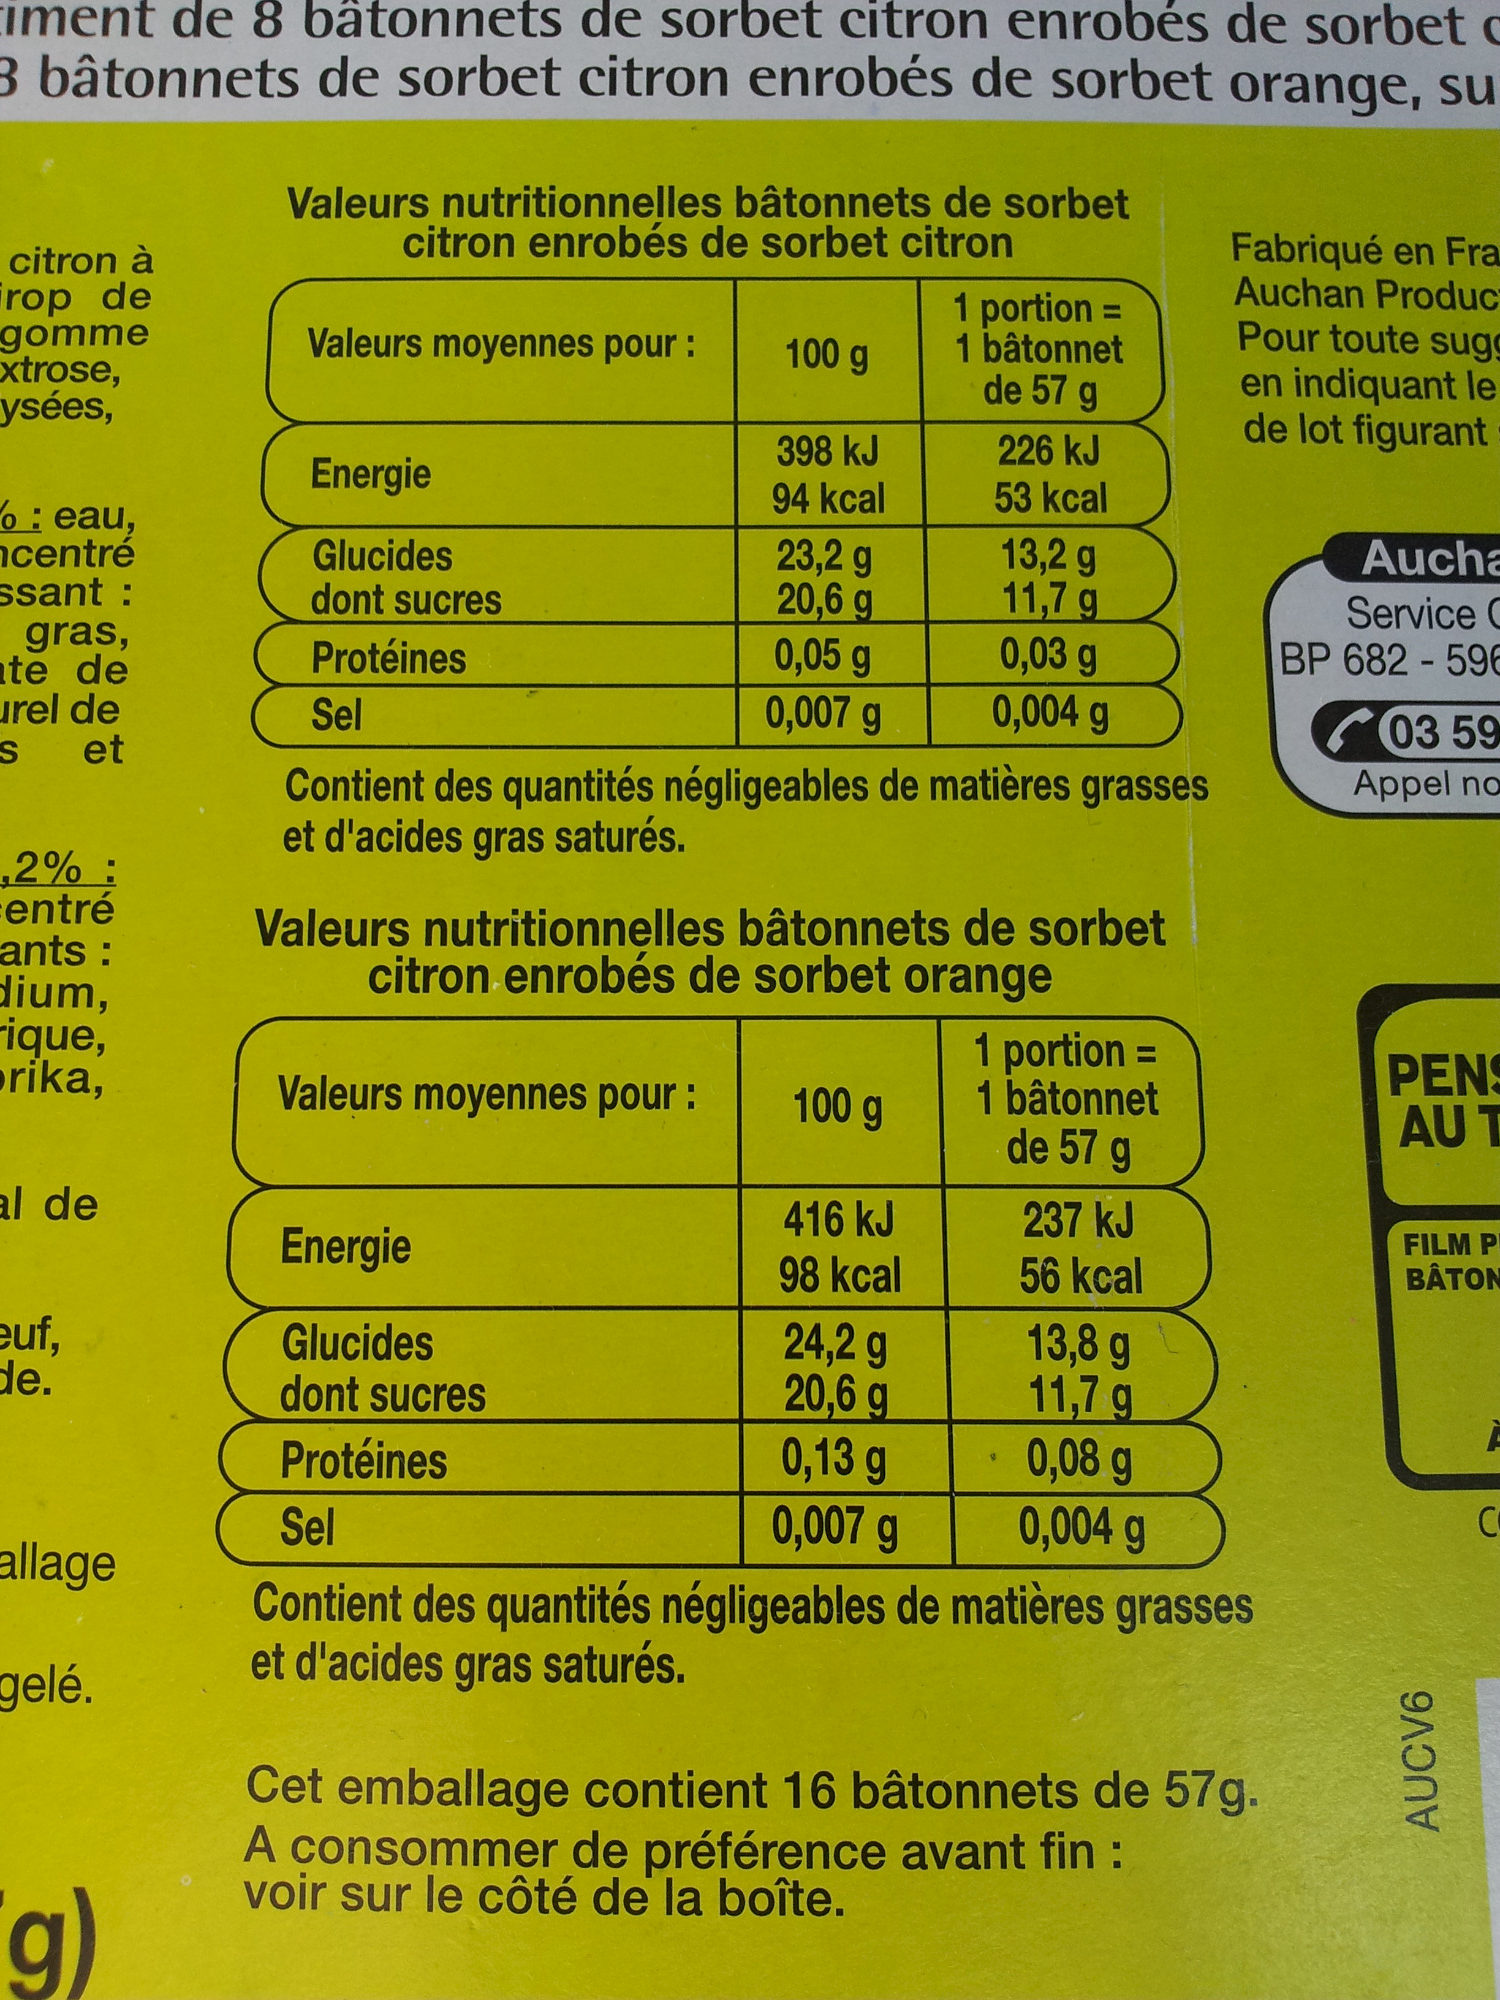 16 bâtonnets citron/orange - Tableau nutritionnel